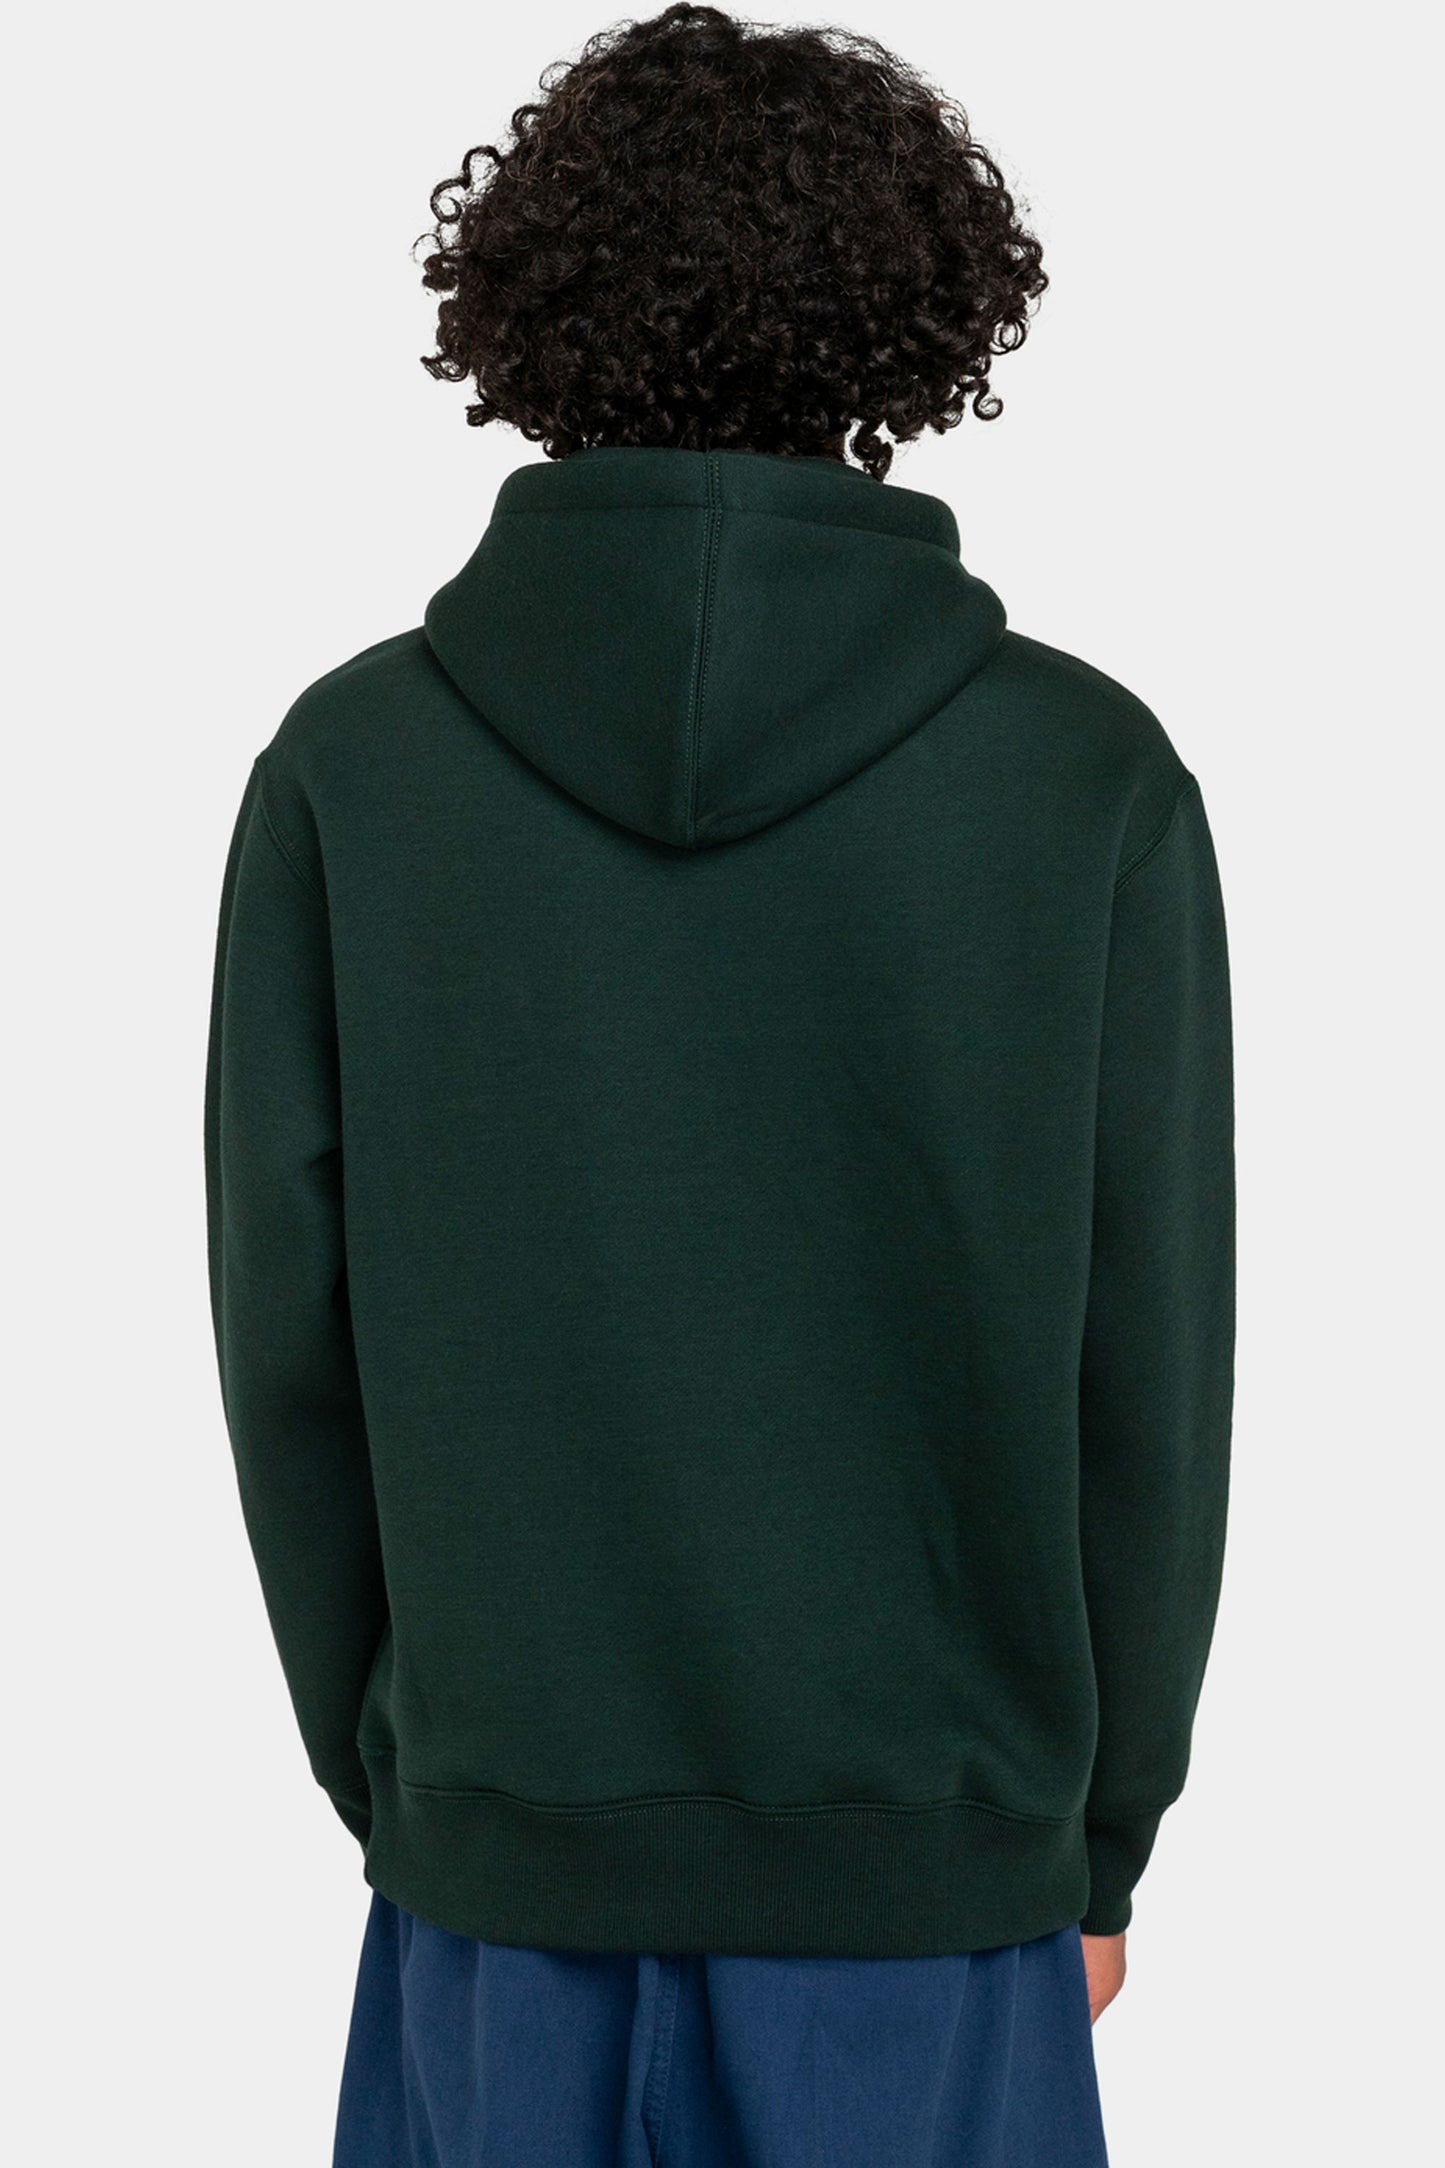 Pukas-Surf-Shop-element-sweater-Cornell-Heavy-dark-green